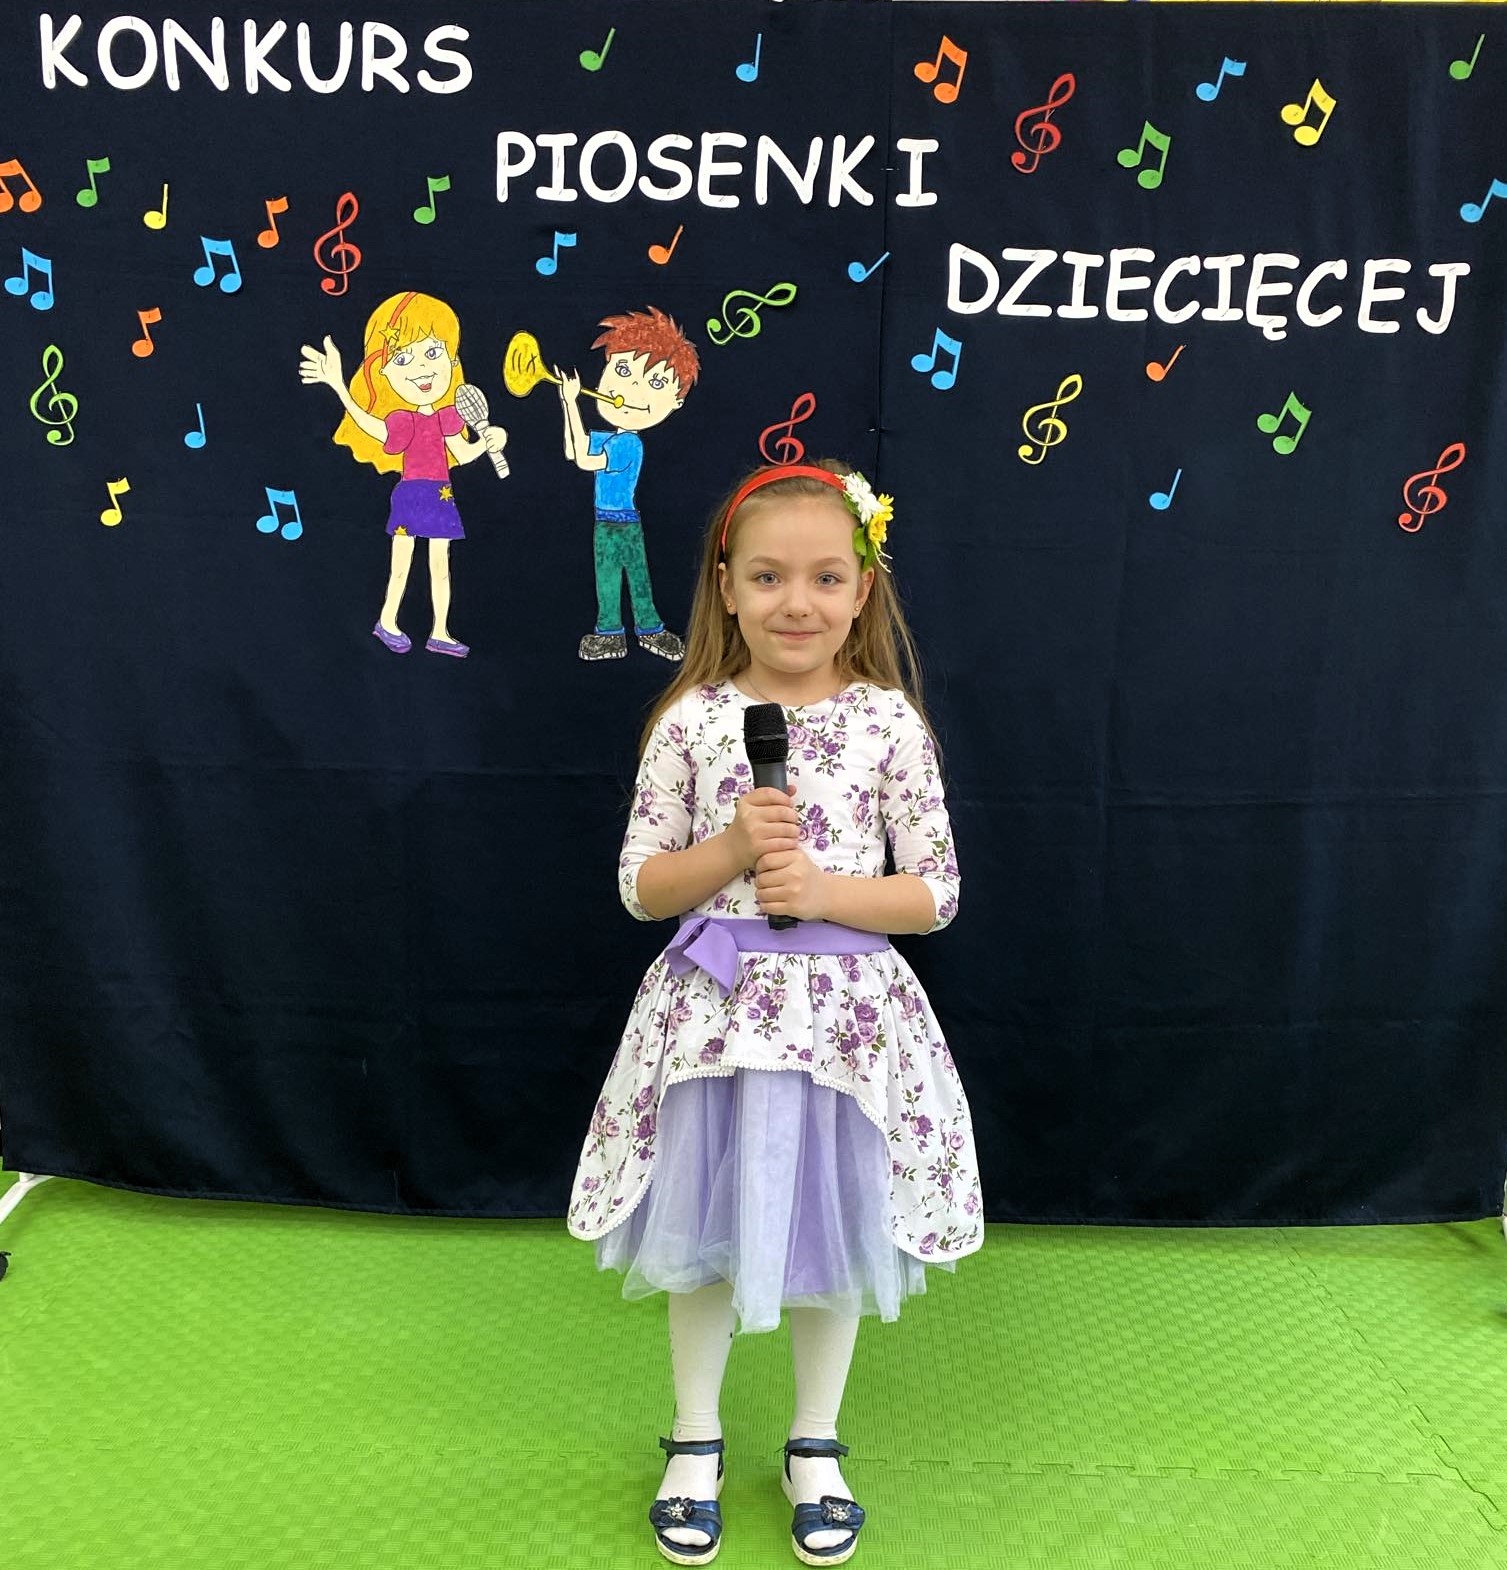 W sali lekcyjnej na tle dekoracji z napisem „Konkurs piosenki dziecięcej”, stoi dziewczynka i trzyma mikrofon.